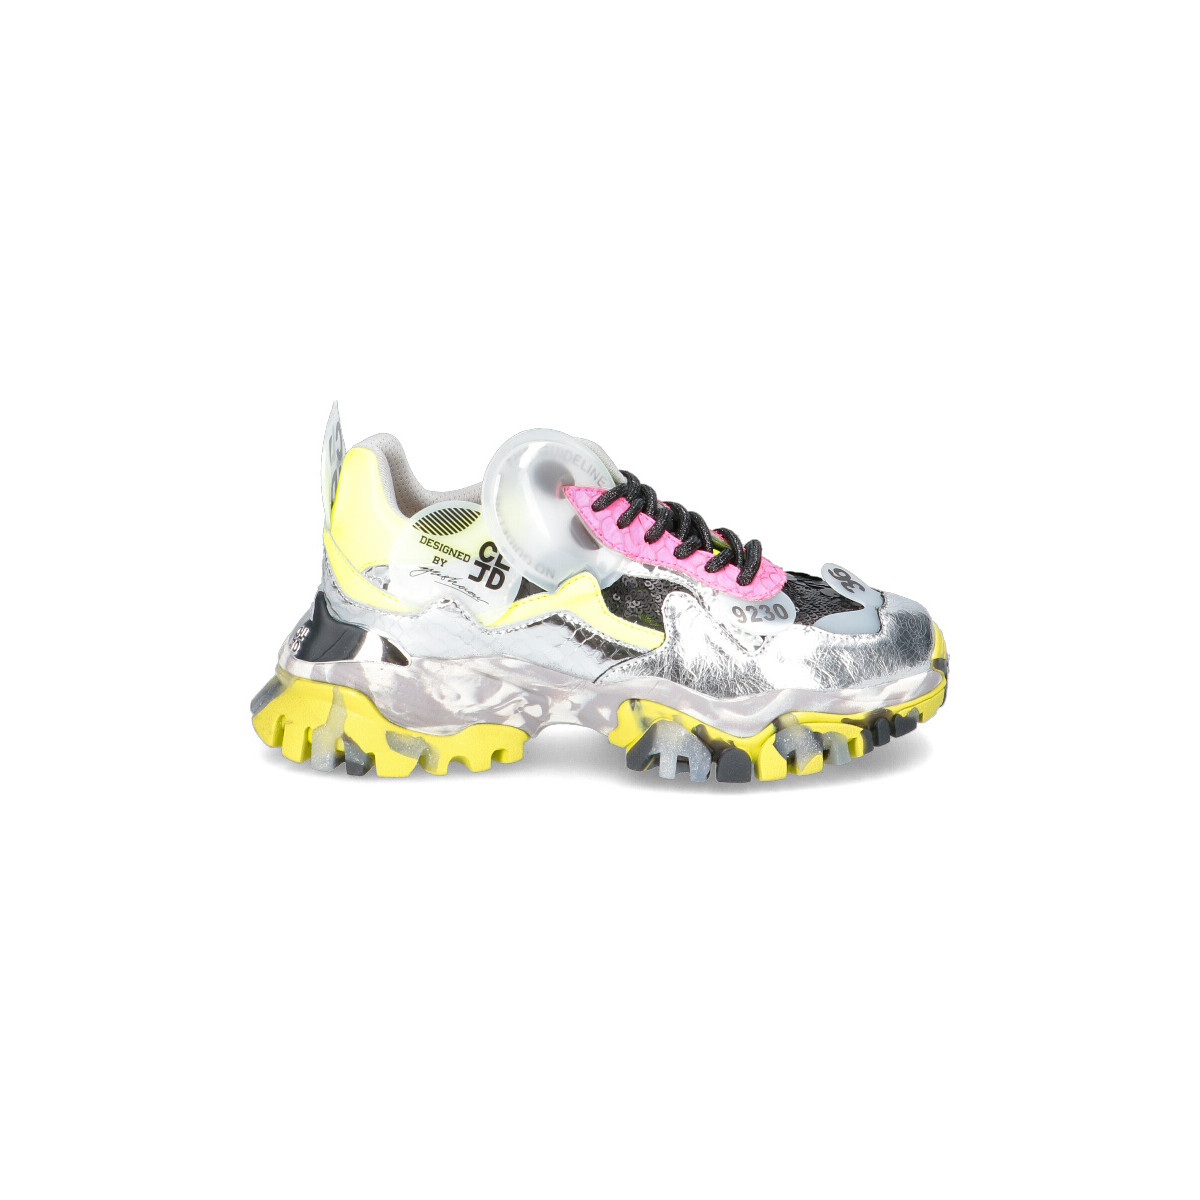 Chaussures Femme zapatillas de running competición talla 38.5 moradas Sneaker menos Donna 